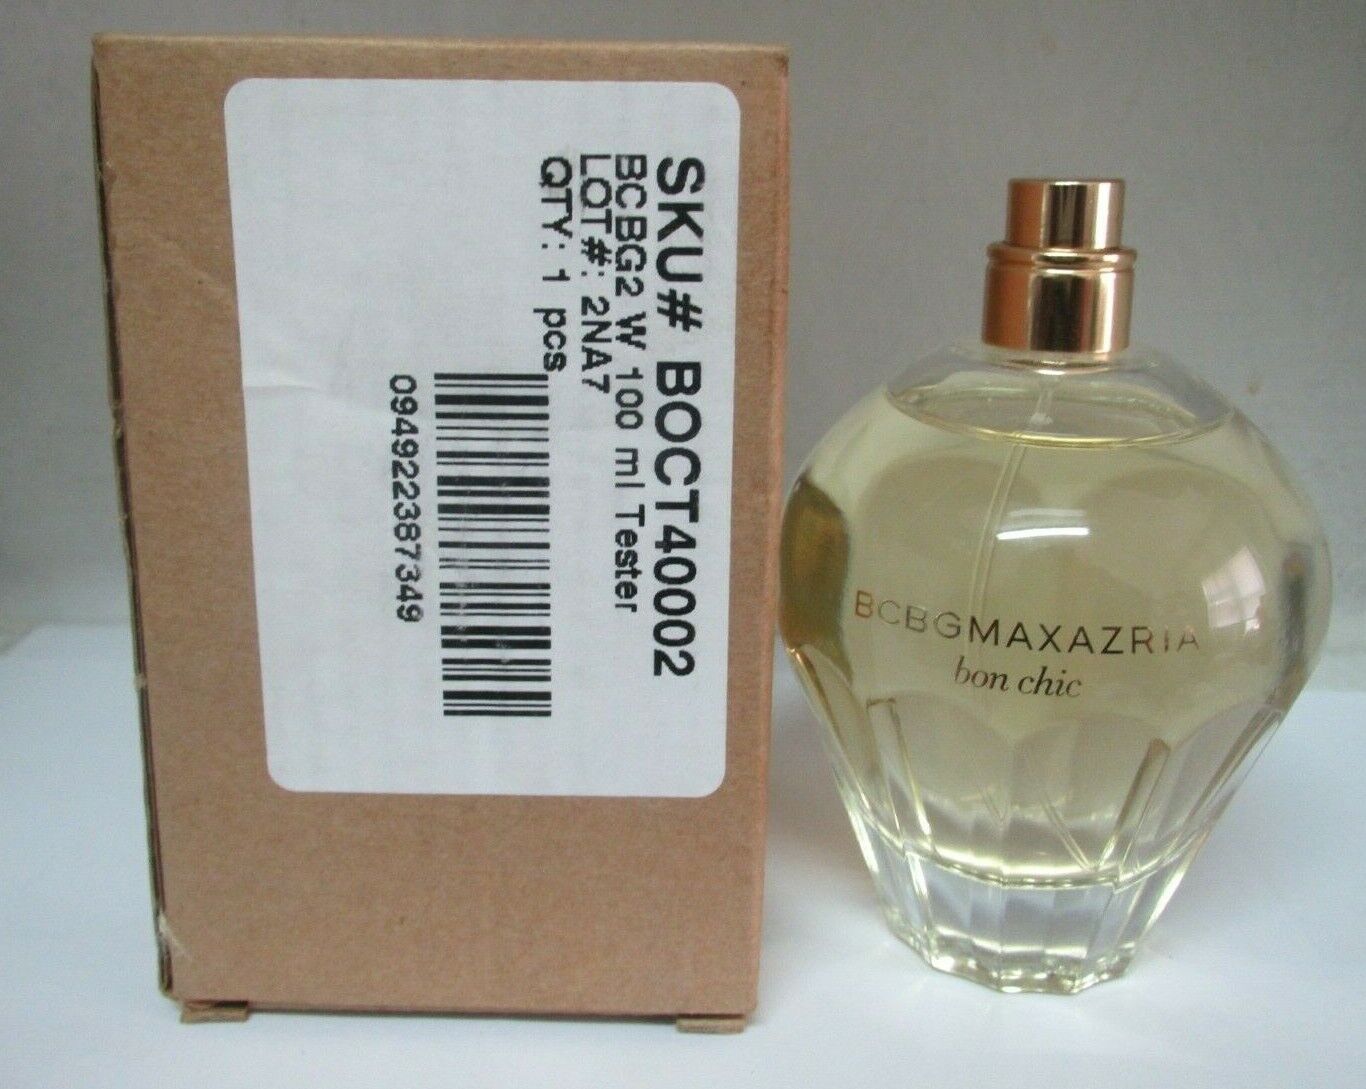 BCBG Max Azria Eau De Parfum Spray for Women 100ml at Ratans Online Shop - Perfumes Wholesale and Retailer Fragrance